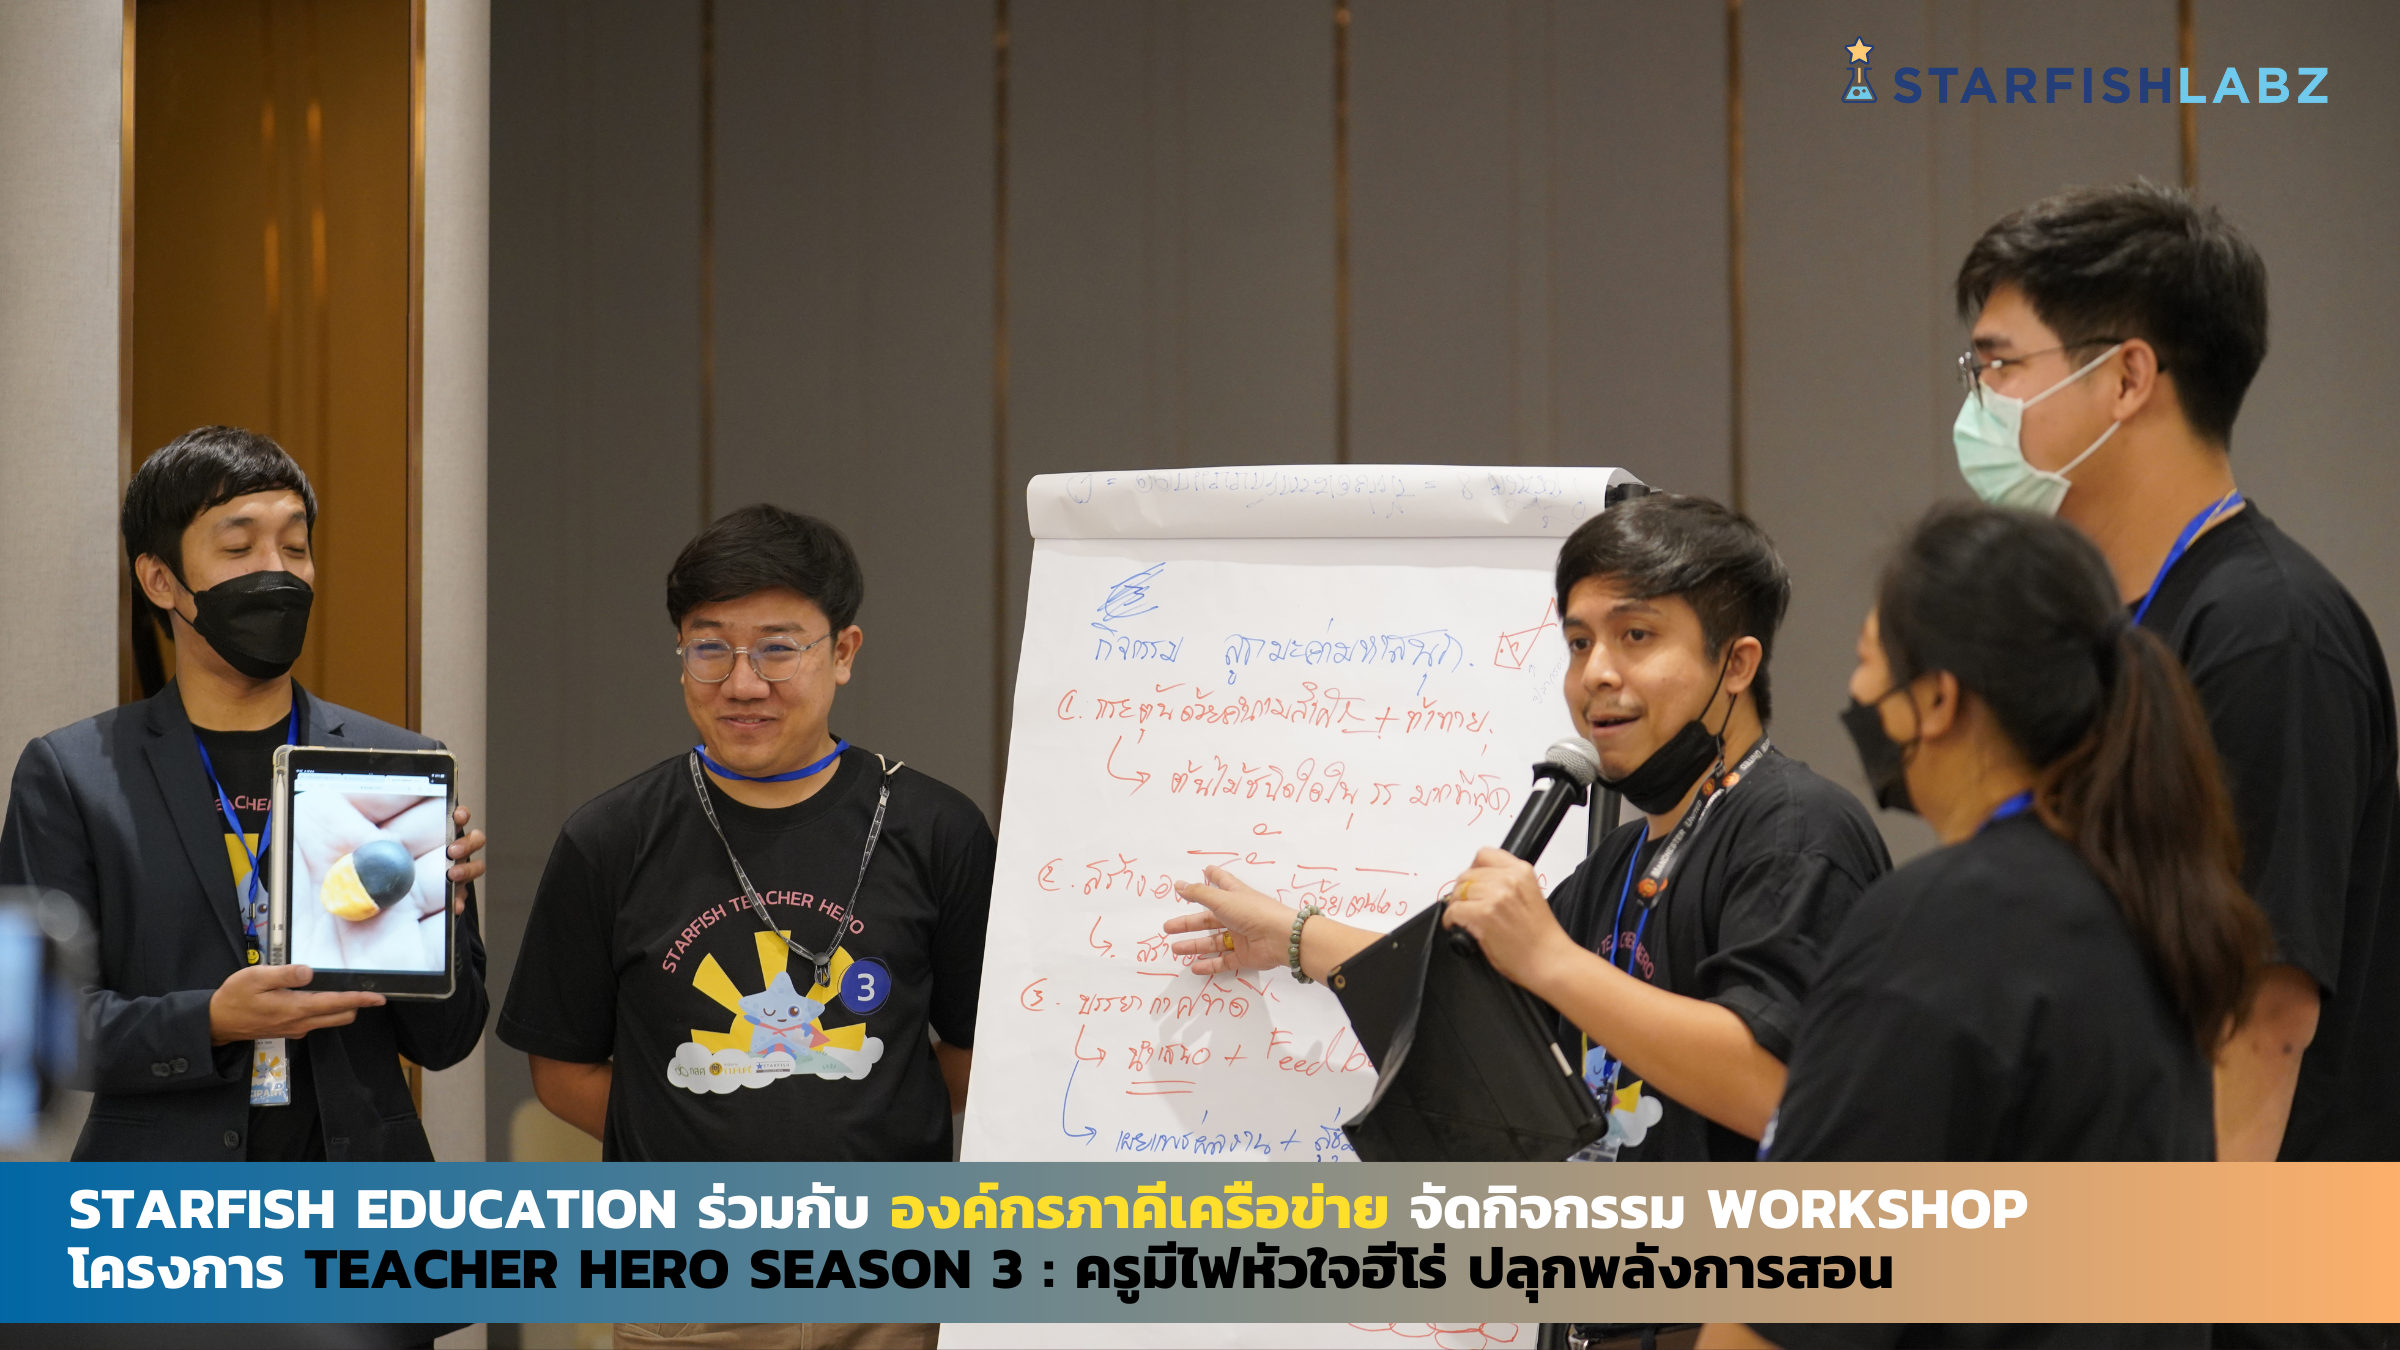 3 องค์กรภาคีเครือข่าย จัดกิจกรรม Workshop โครงการ Teacher Hero Season 3 สร้างครูไทยหัวใจฮีโร่